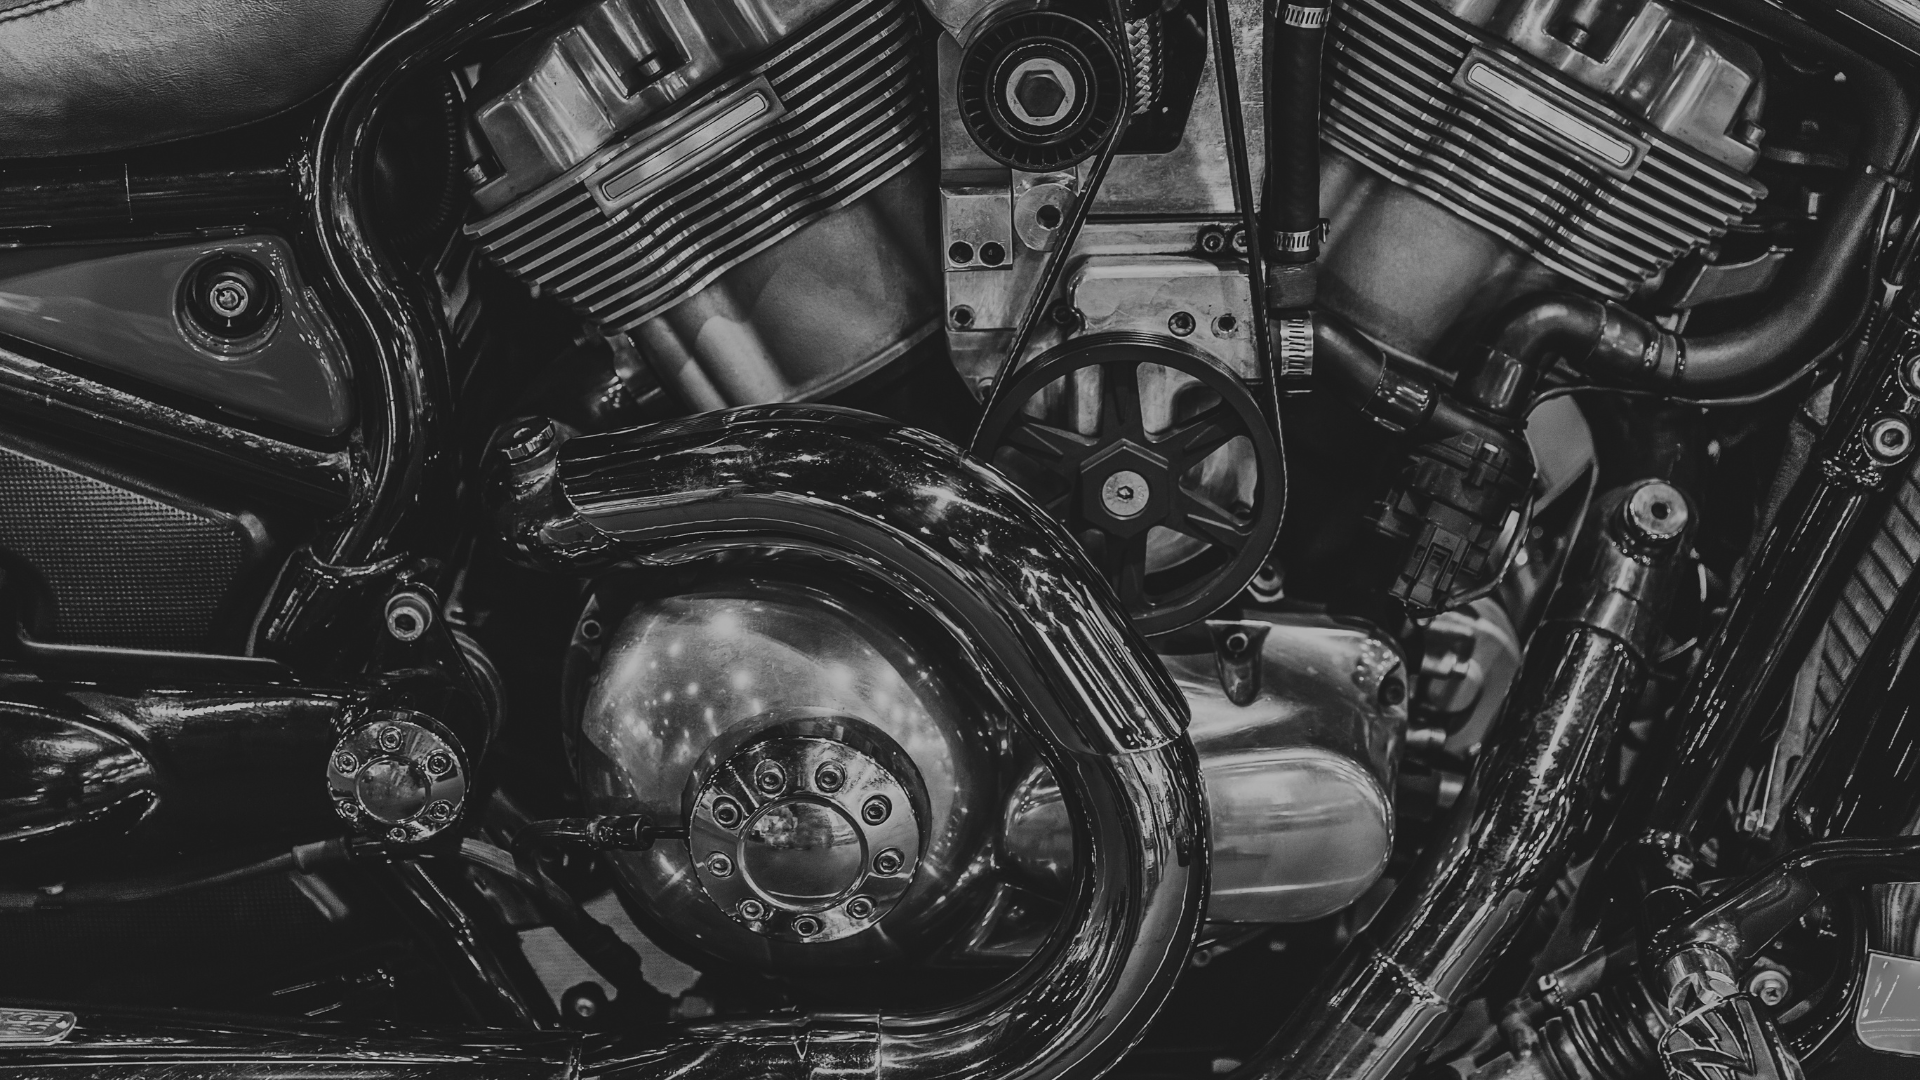 Migliora le tue abilità: iscriviti a un corso di meccanico Harley Davidson - moto - Racext 9